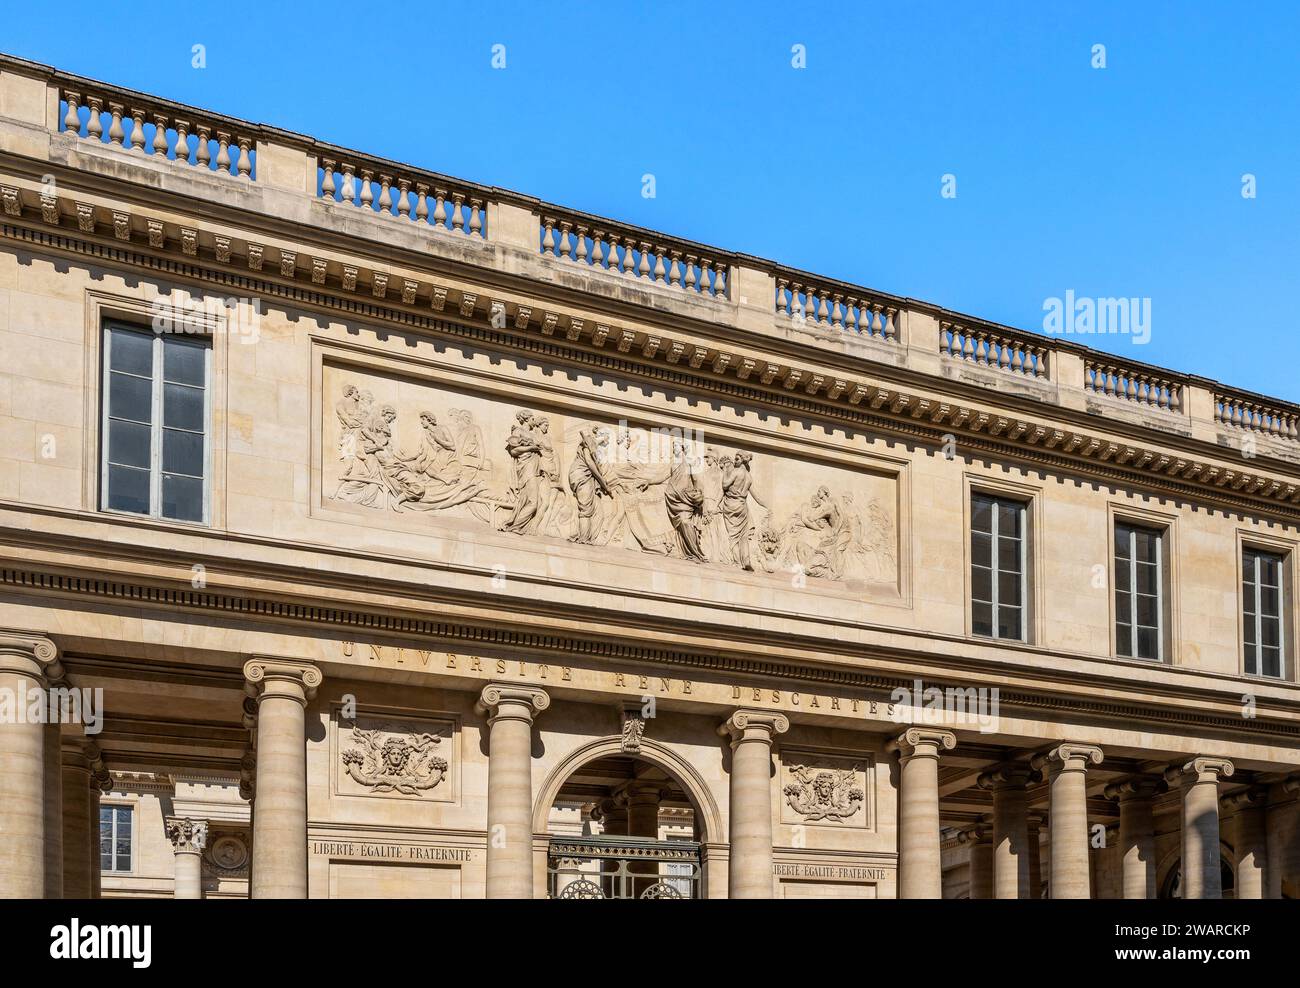 Bas-relief on historical façade of École de Chirurgie, now the headquarters of Paris Descartes University, French public university in Paris, France Stock Photo